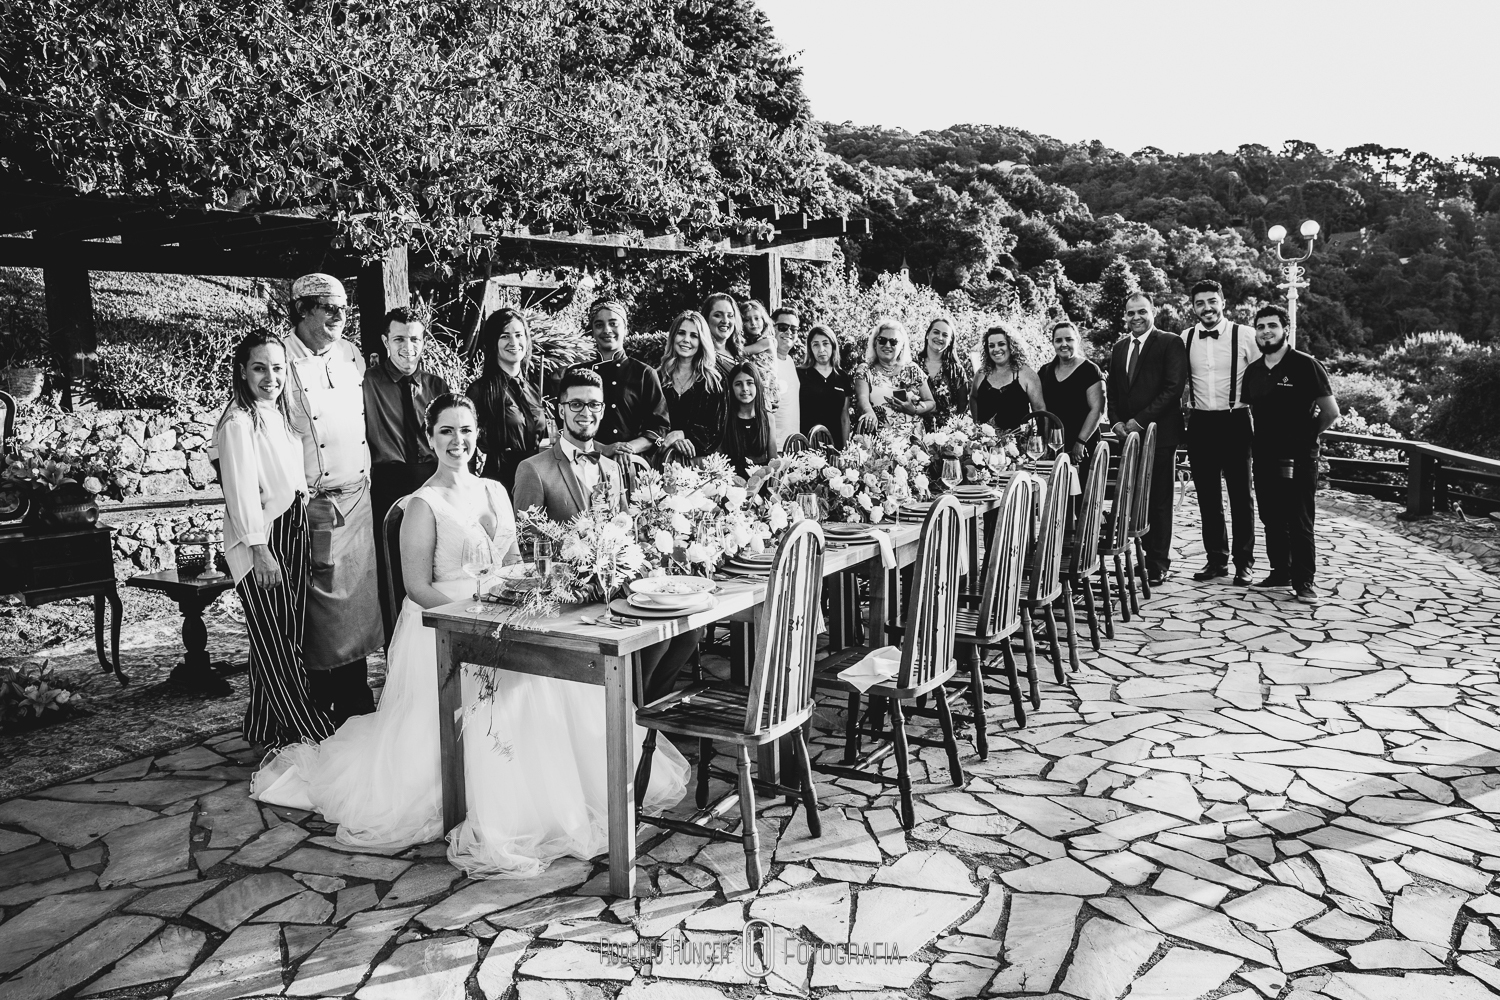 Elopement Wedding em monte verde, sul de minas gerais. Casamento ou mini wedding nas montanhas. O elopement wedding, também conhecido como casamento a dois, tornou-se uma das grandes tendências para casamento no Brasil.